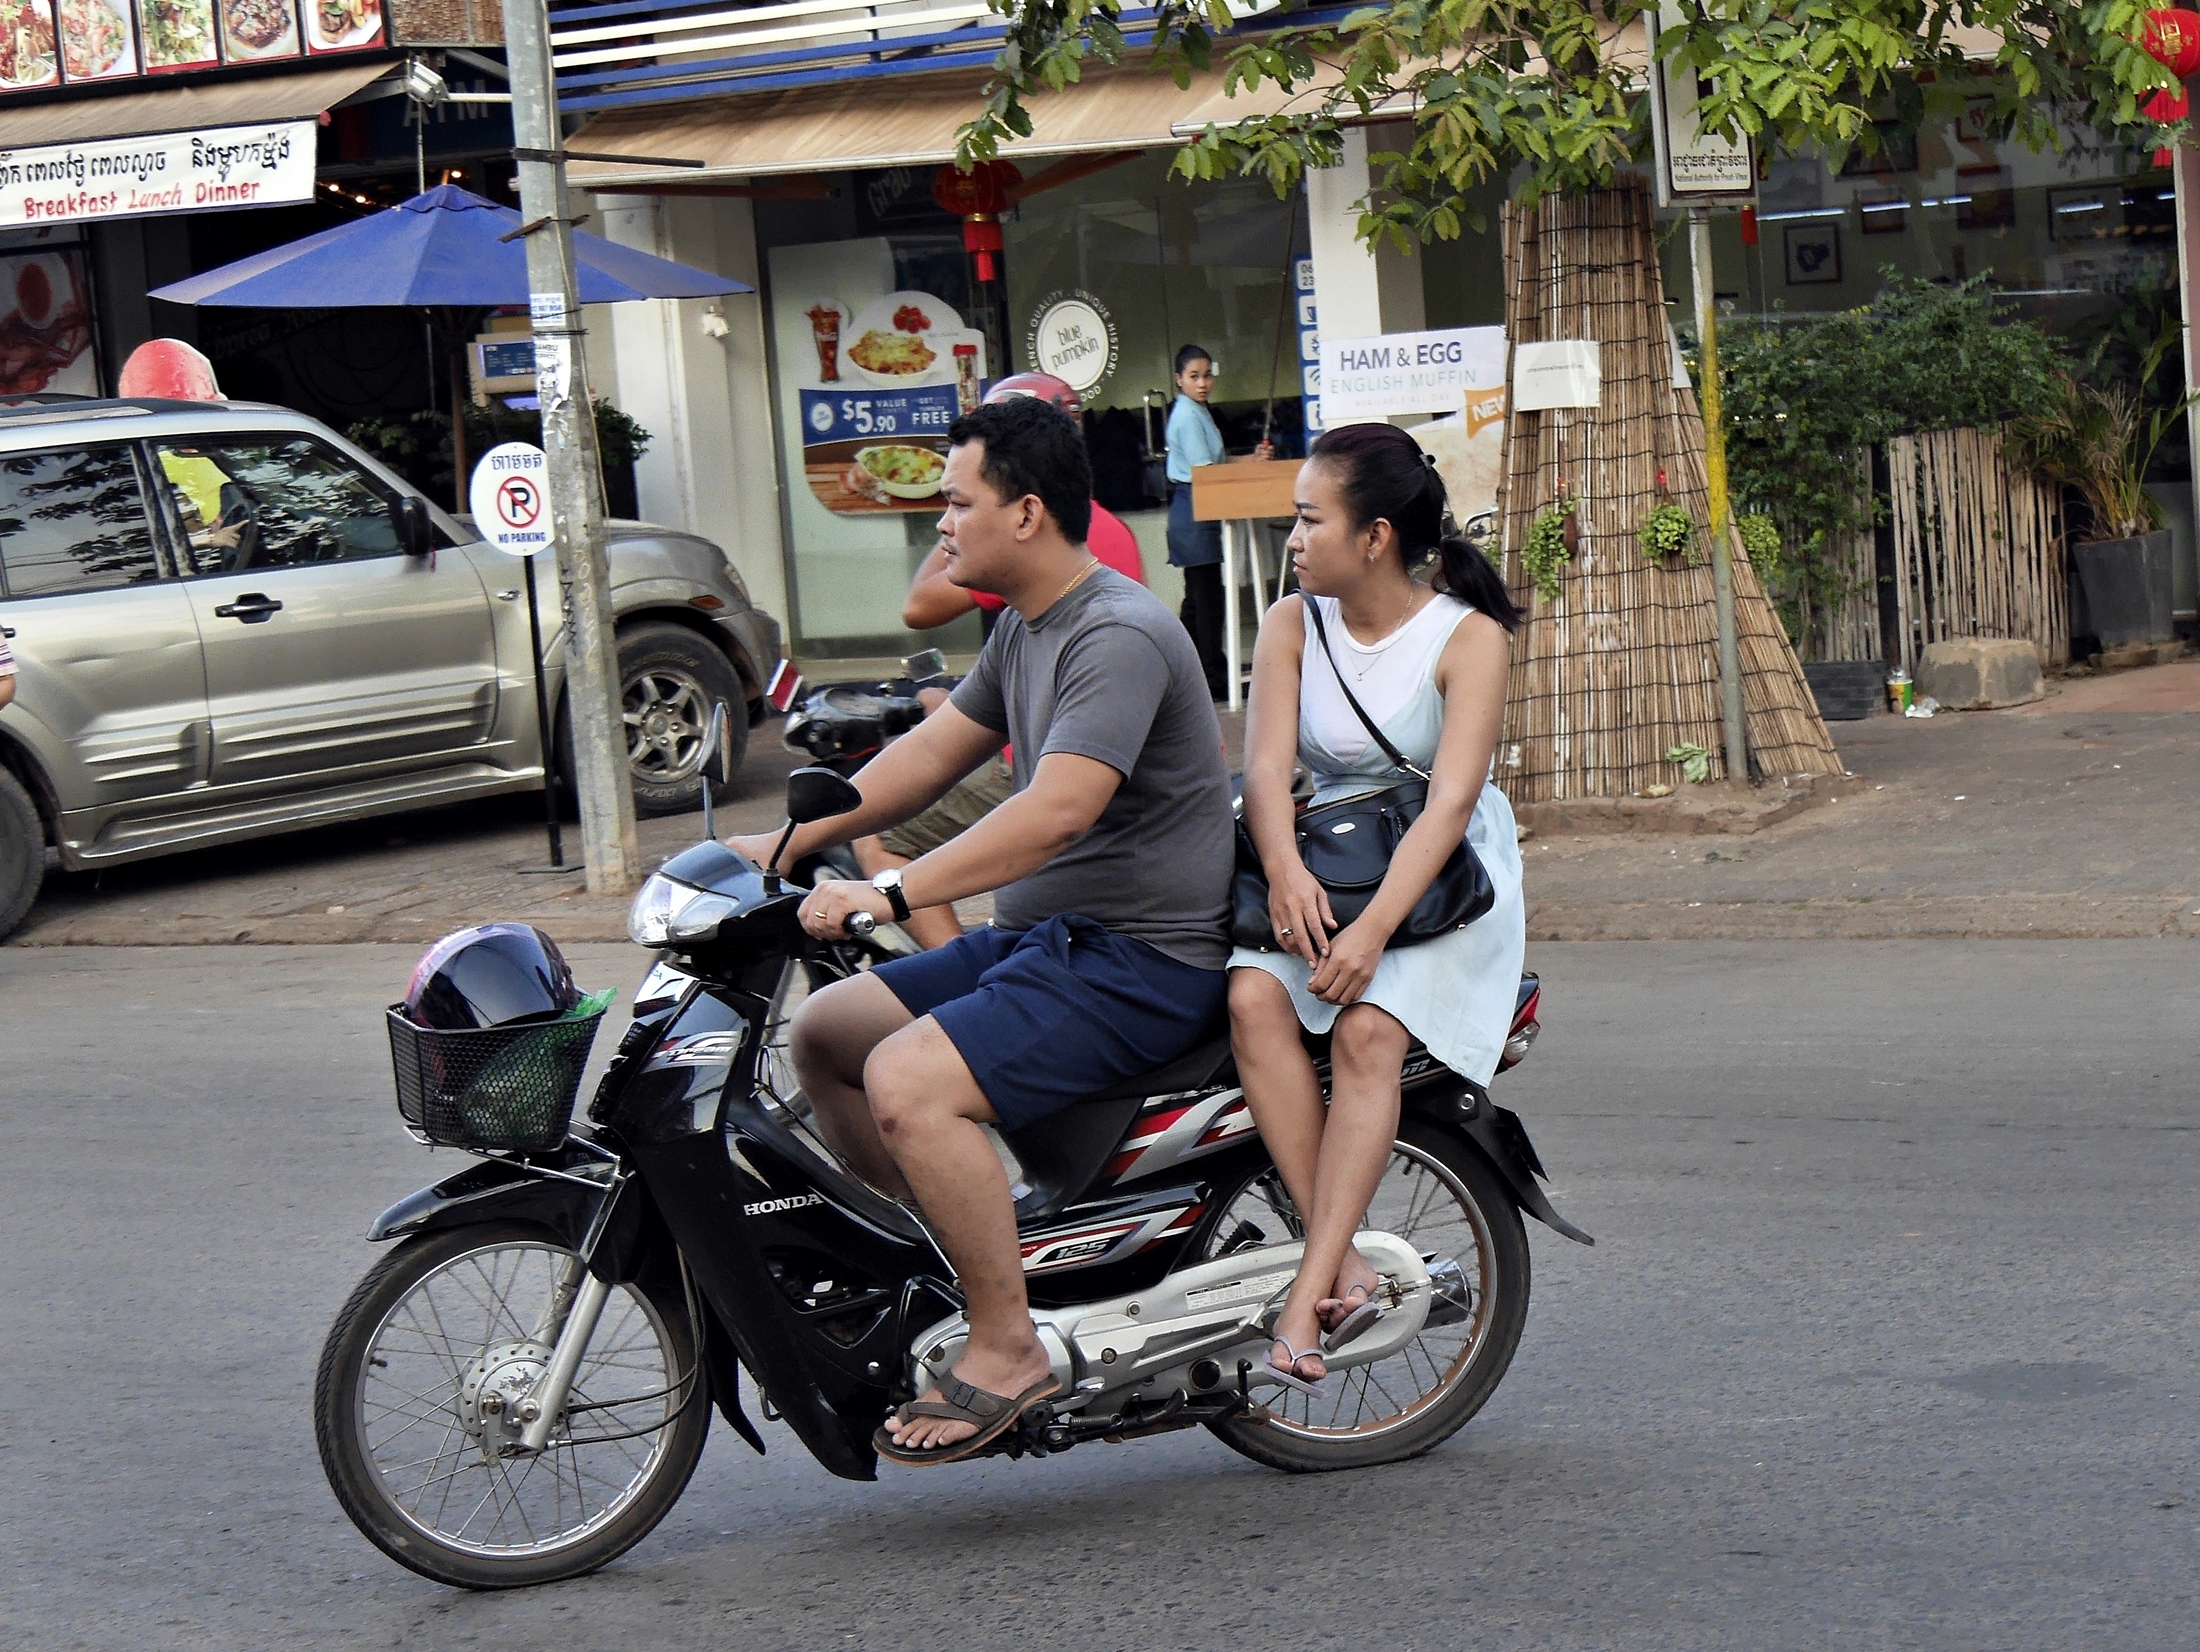 Mann und Frau auf Motorrad